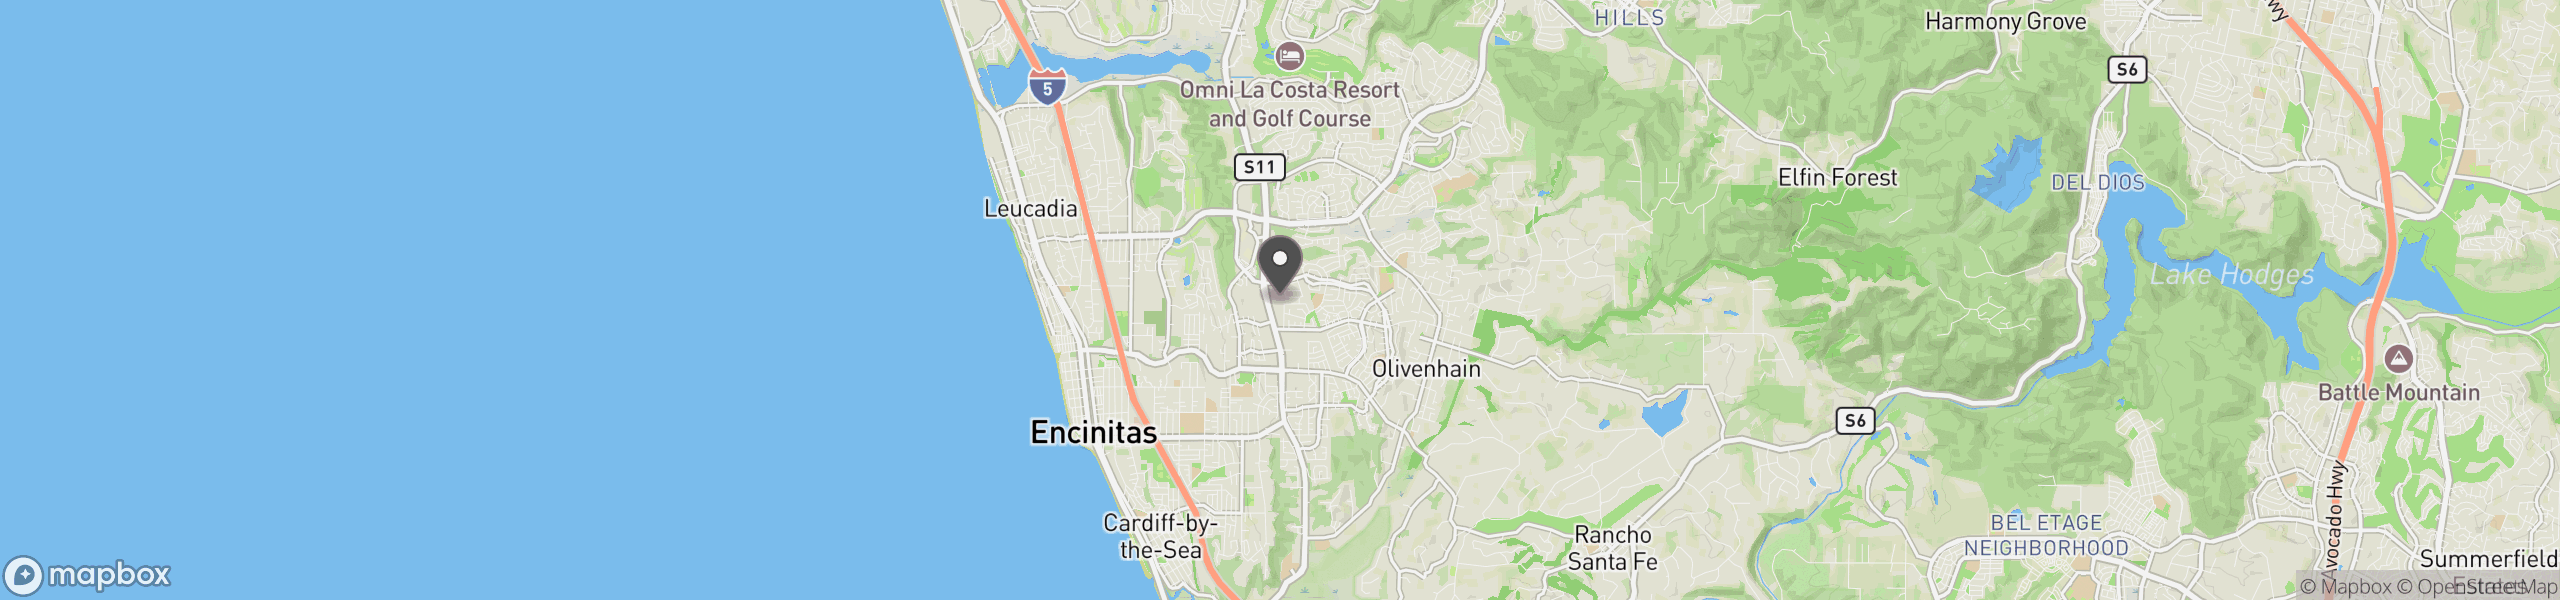 Encinitas, CA